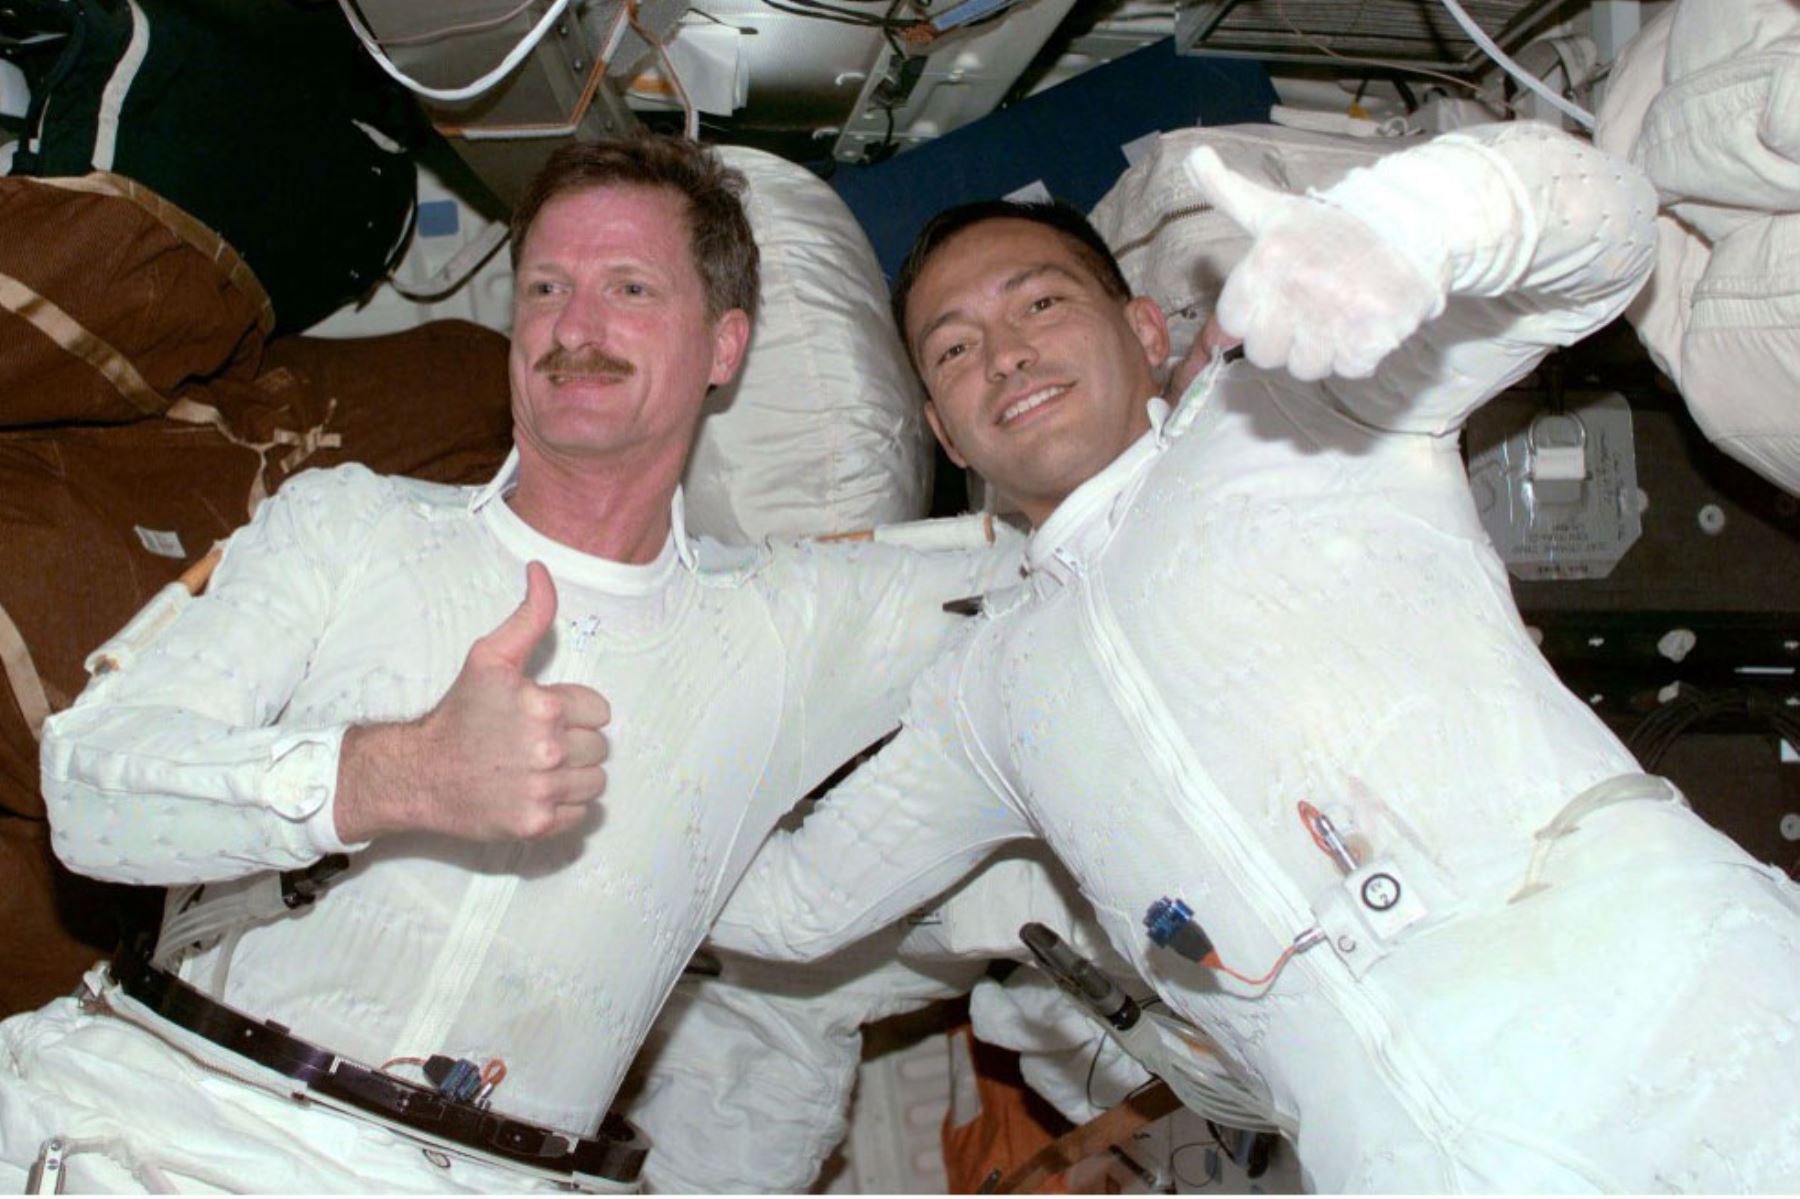 Los astronautas del transbordador espacial estadounidense Endeavour Joe Tanner de los EE. UU. y el peruano Carlos Noriega de los EE. UU. levantan el pulgar, 07 de diciembre de 2000, a bordo de la Estación Espacial Internacional después de su tercera y última caminata espacial. Foto: AFP